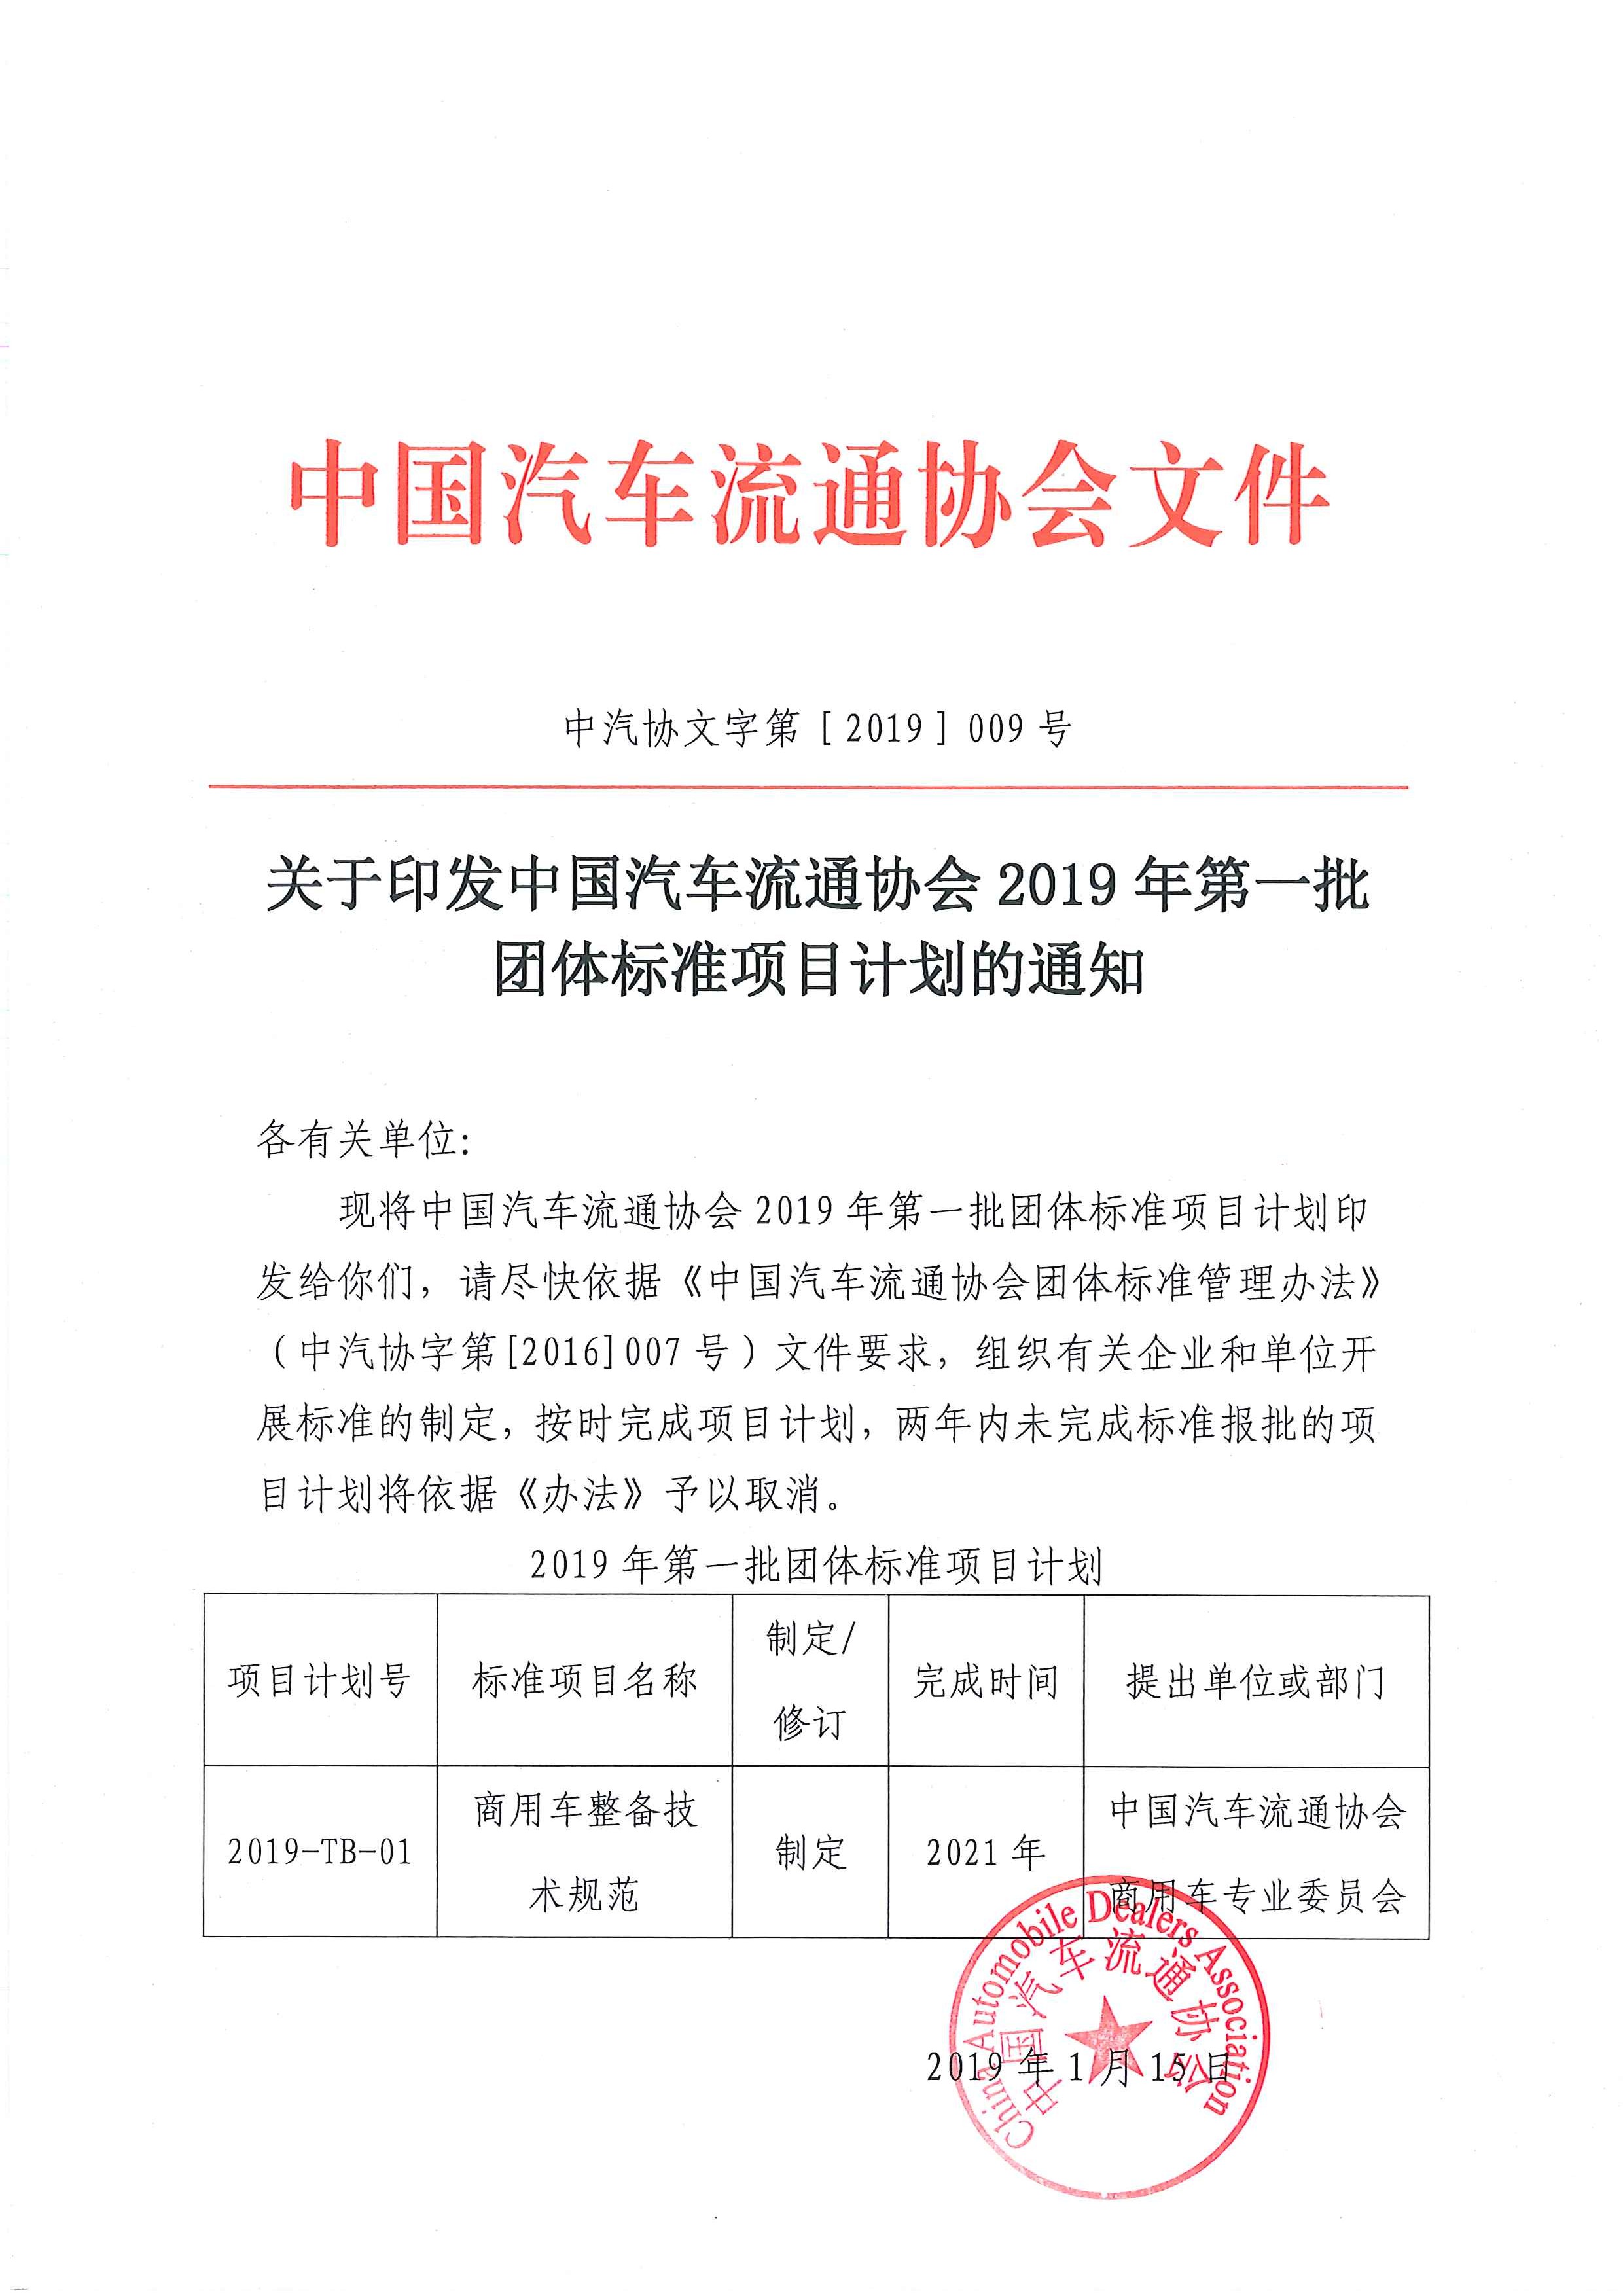 关于印发中国汽车流通协会2019年第一批团体标准项目计划的通知.jpg